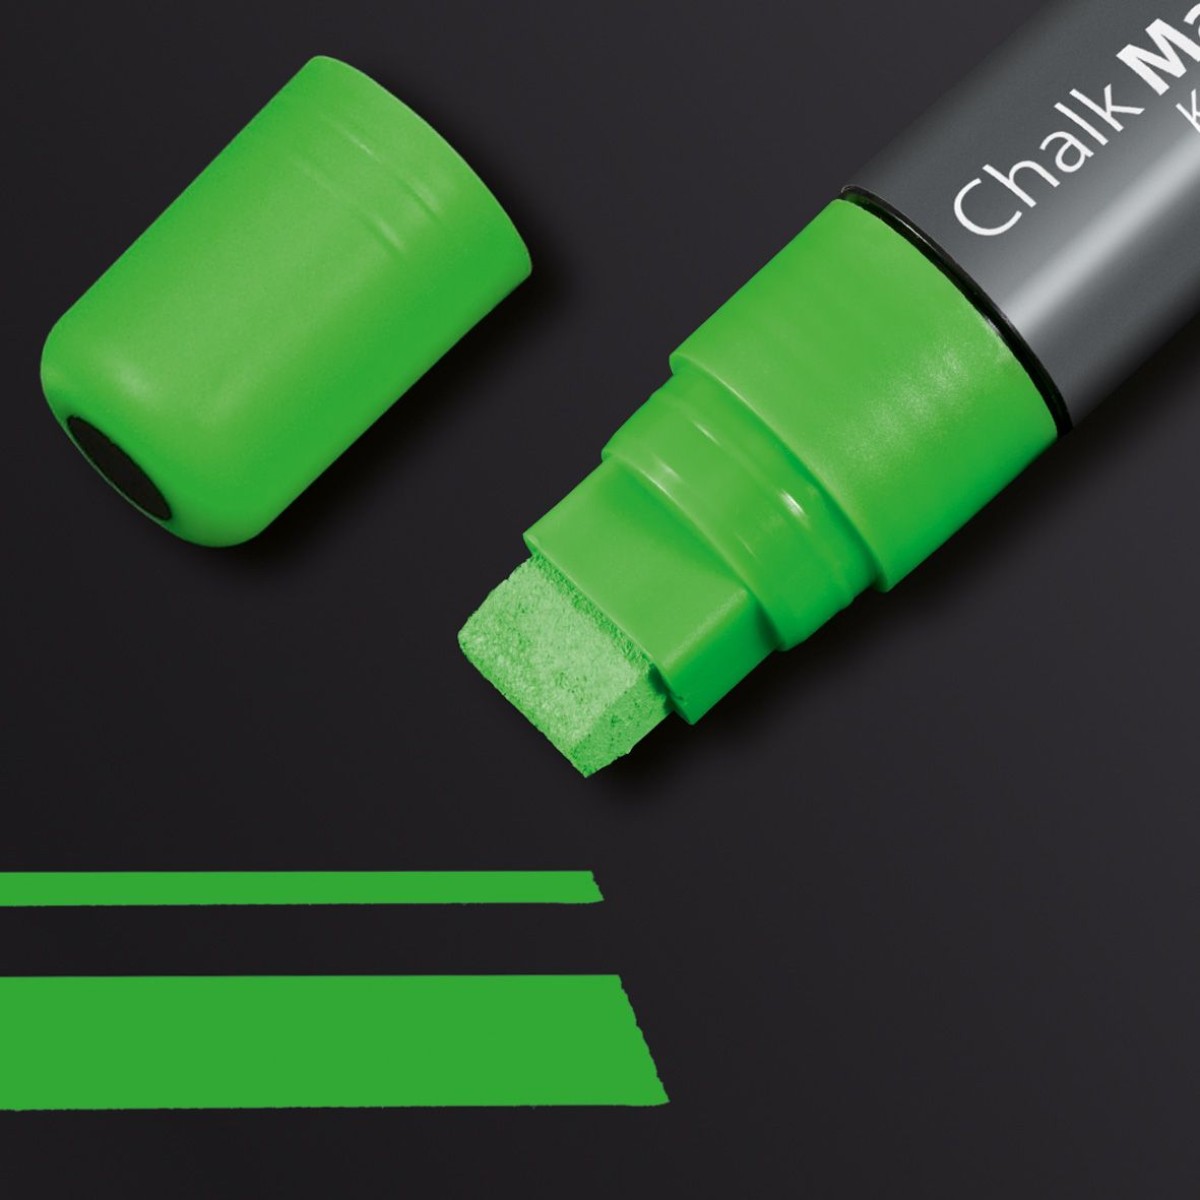 GL174 - Sigel - Chalk Marker 150, chisel tip 5-15 mm - Green